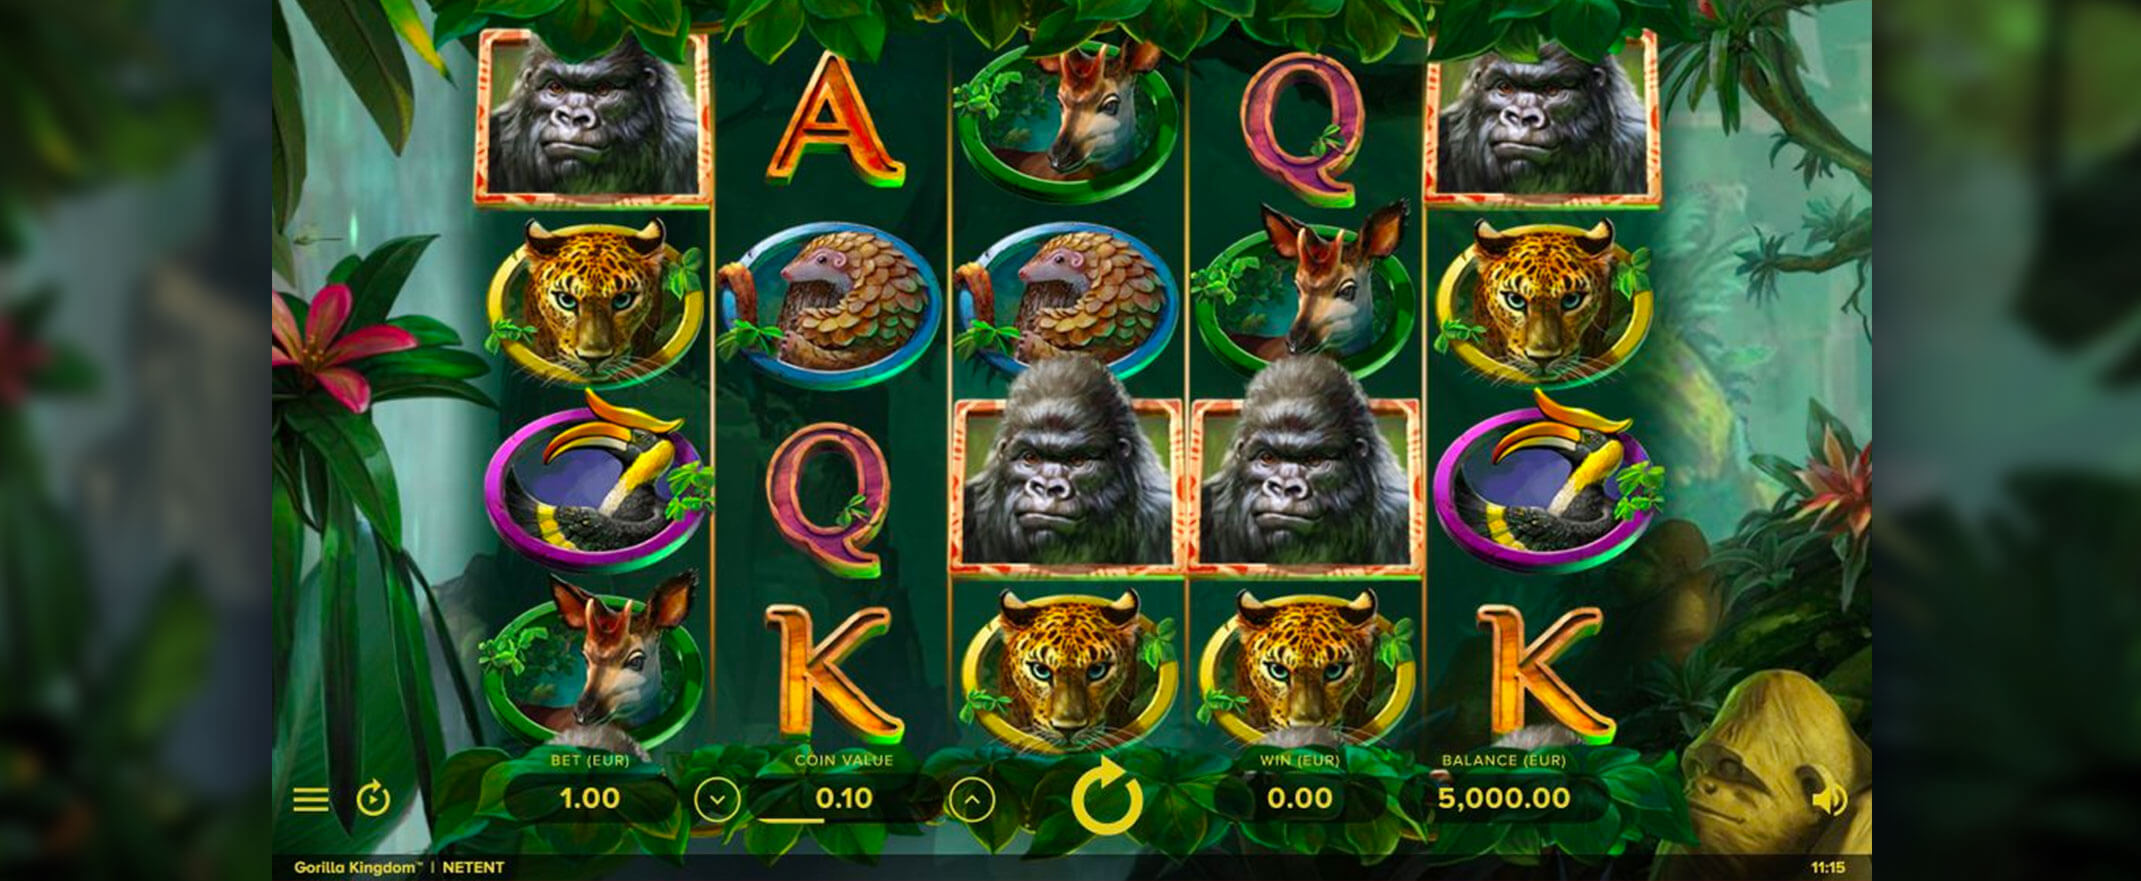 Gorilla Kingdom Spielautomat spielen